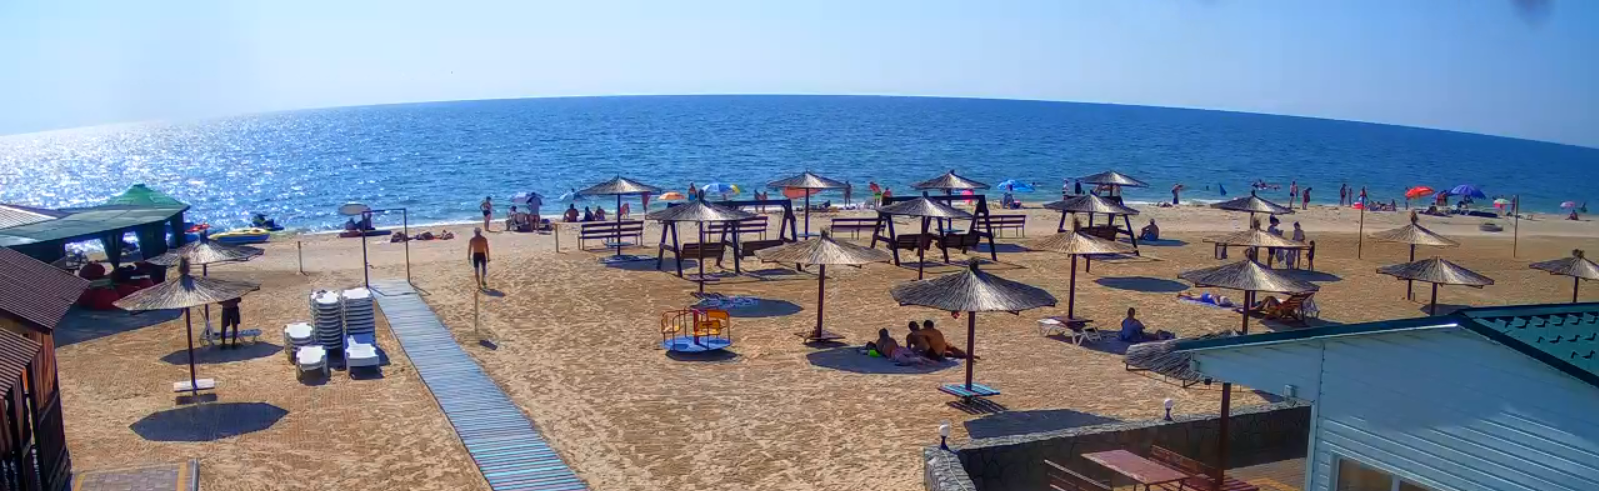 Люди в море почти не купаются: как отдыхают в Кирилловке прямо сейчас (ФОТО)